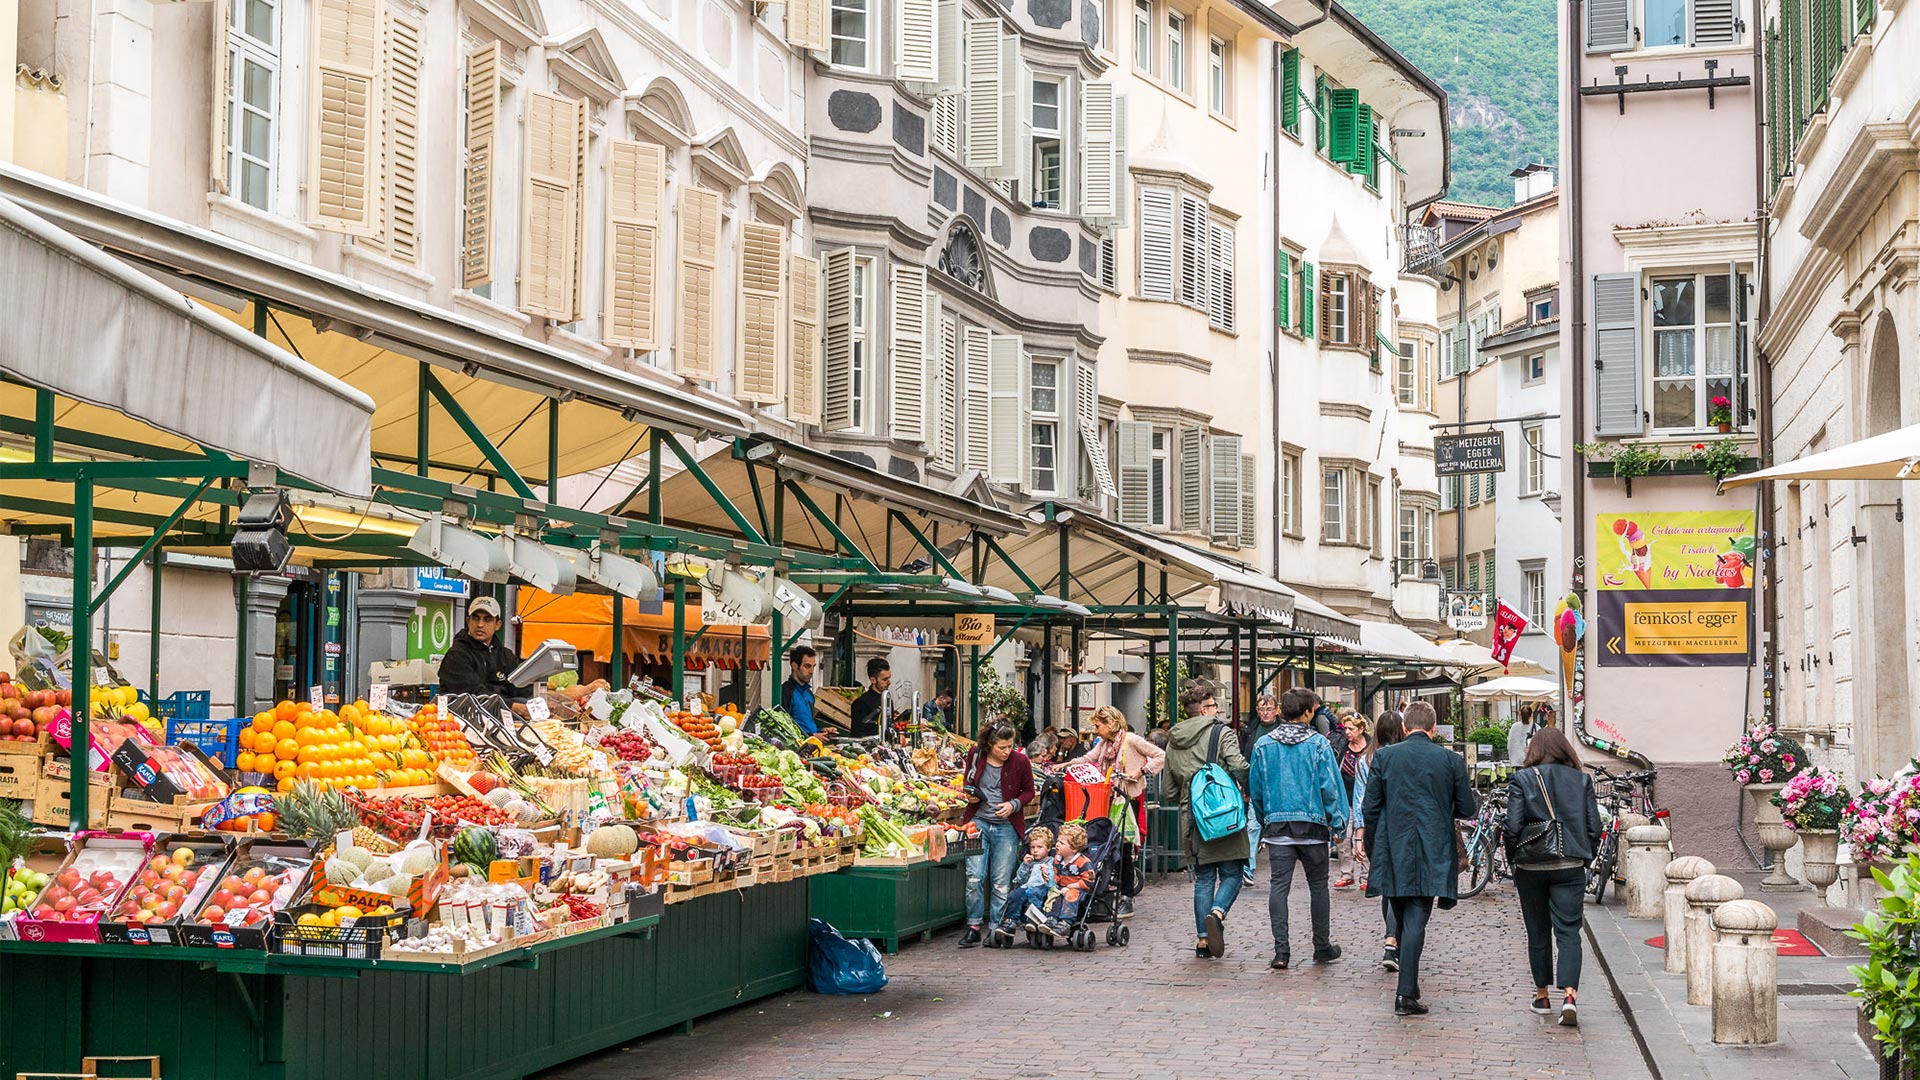 In Piazza Erbe i cittadini e turisti si fermano ai mercatini e fruttivendoli per comprare prodotti locali freschi.